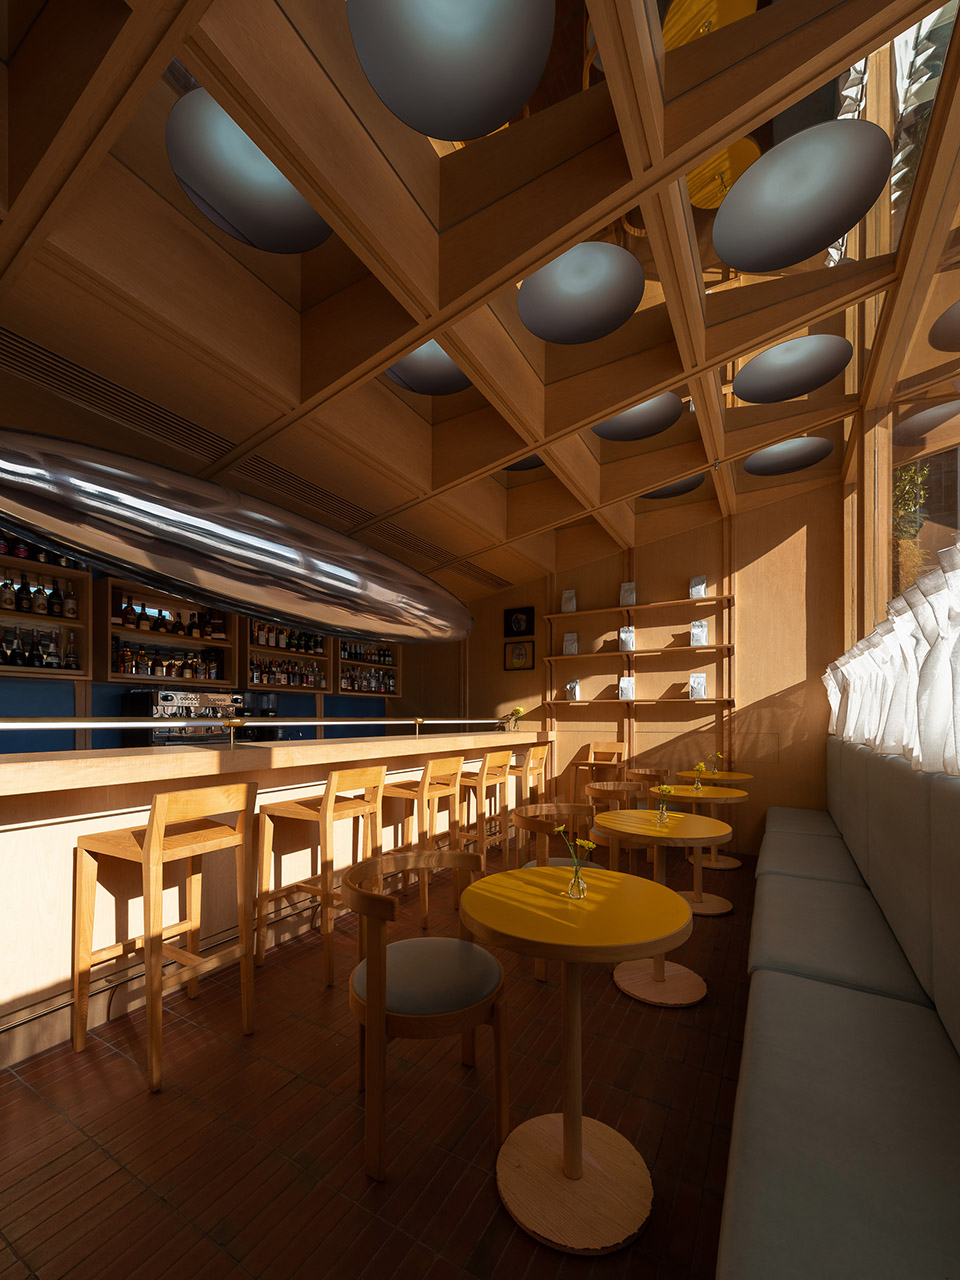 浮廊C2 Cafe &  Bar咖啡厅，深圳/专门为年轻人打造的“空中楼阁”-65